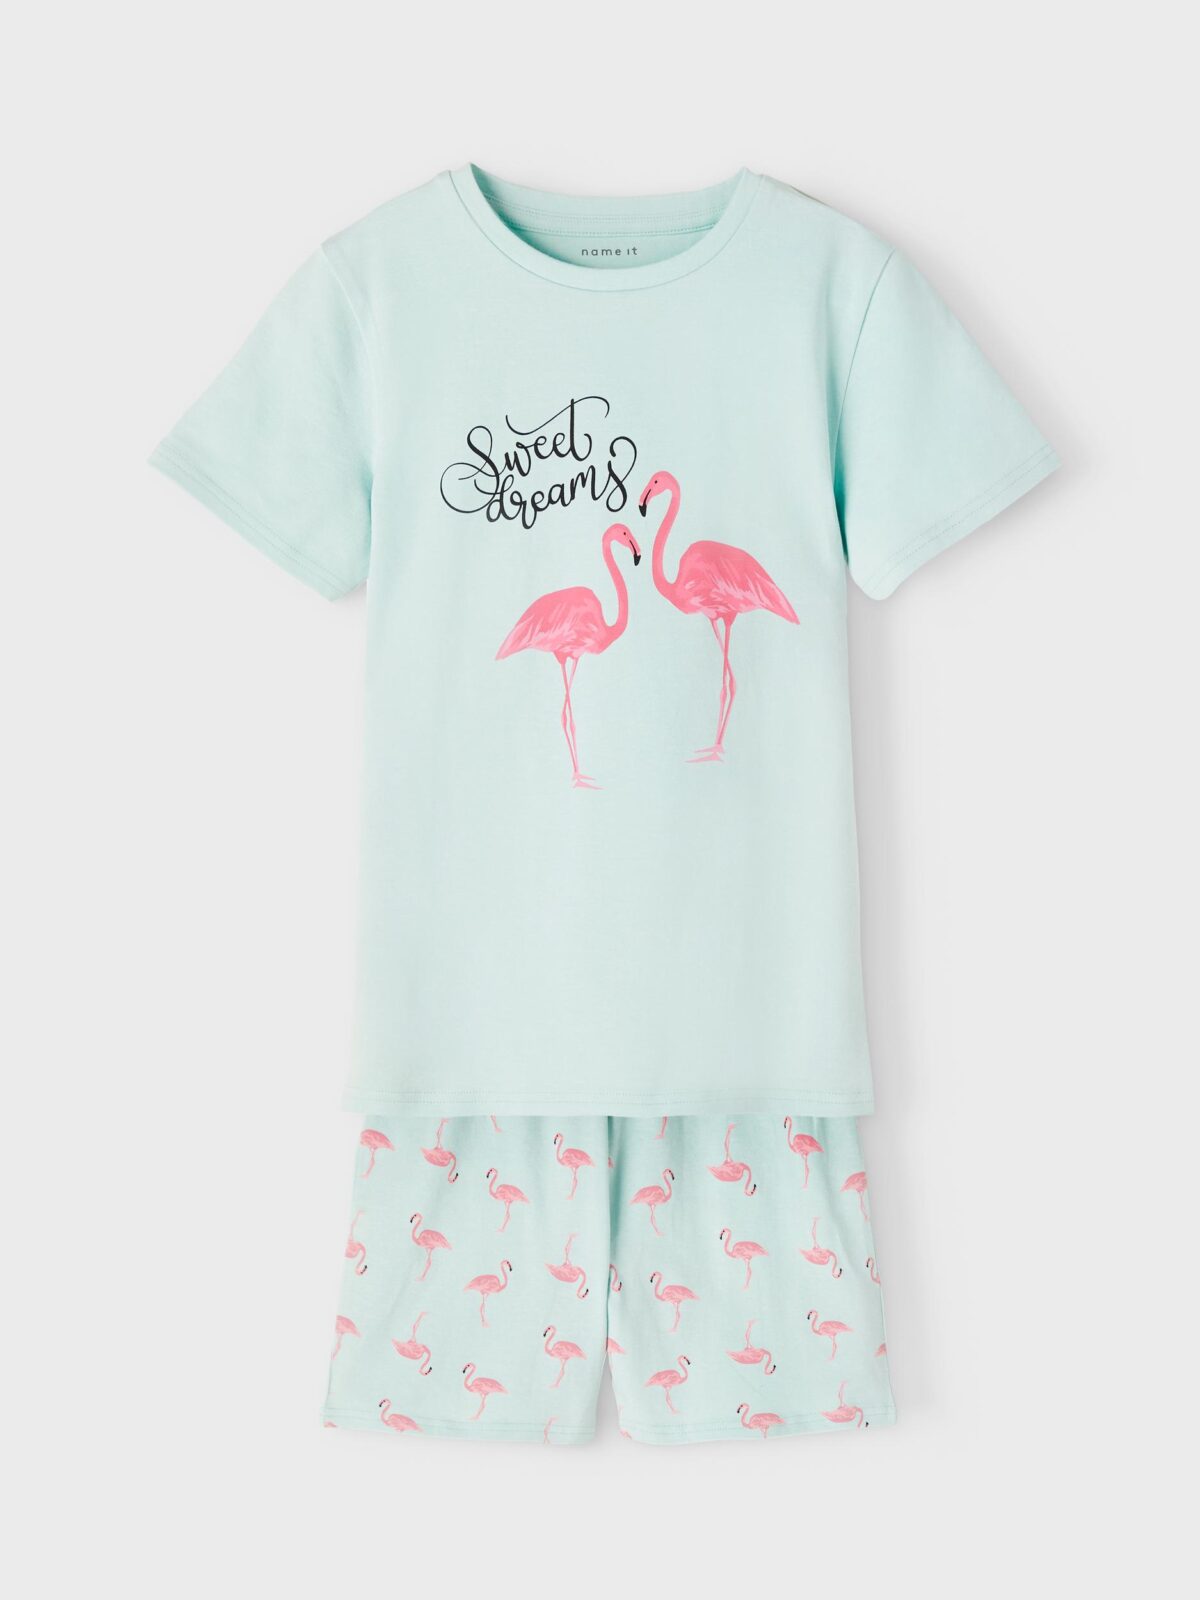 Name It orgaanilisest puuvillast pidžaama, Flamingo Lasteriided - HellyK - Kvaliteetsed lasteriided, villariided, barefoot jalatsid